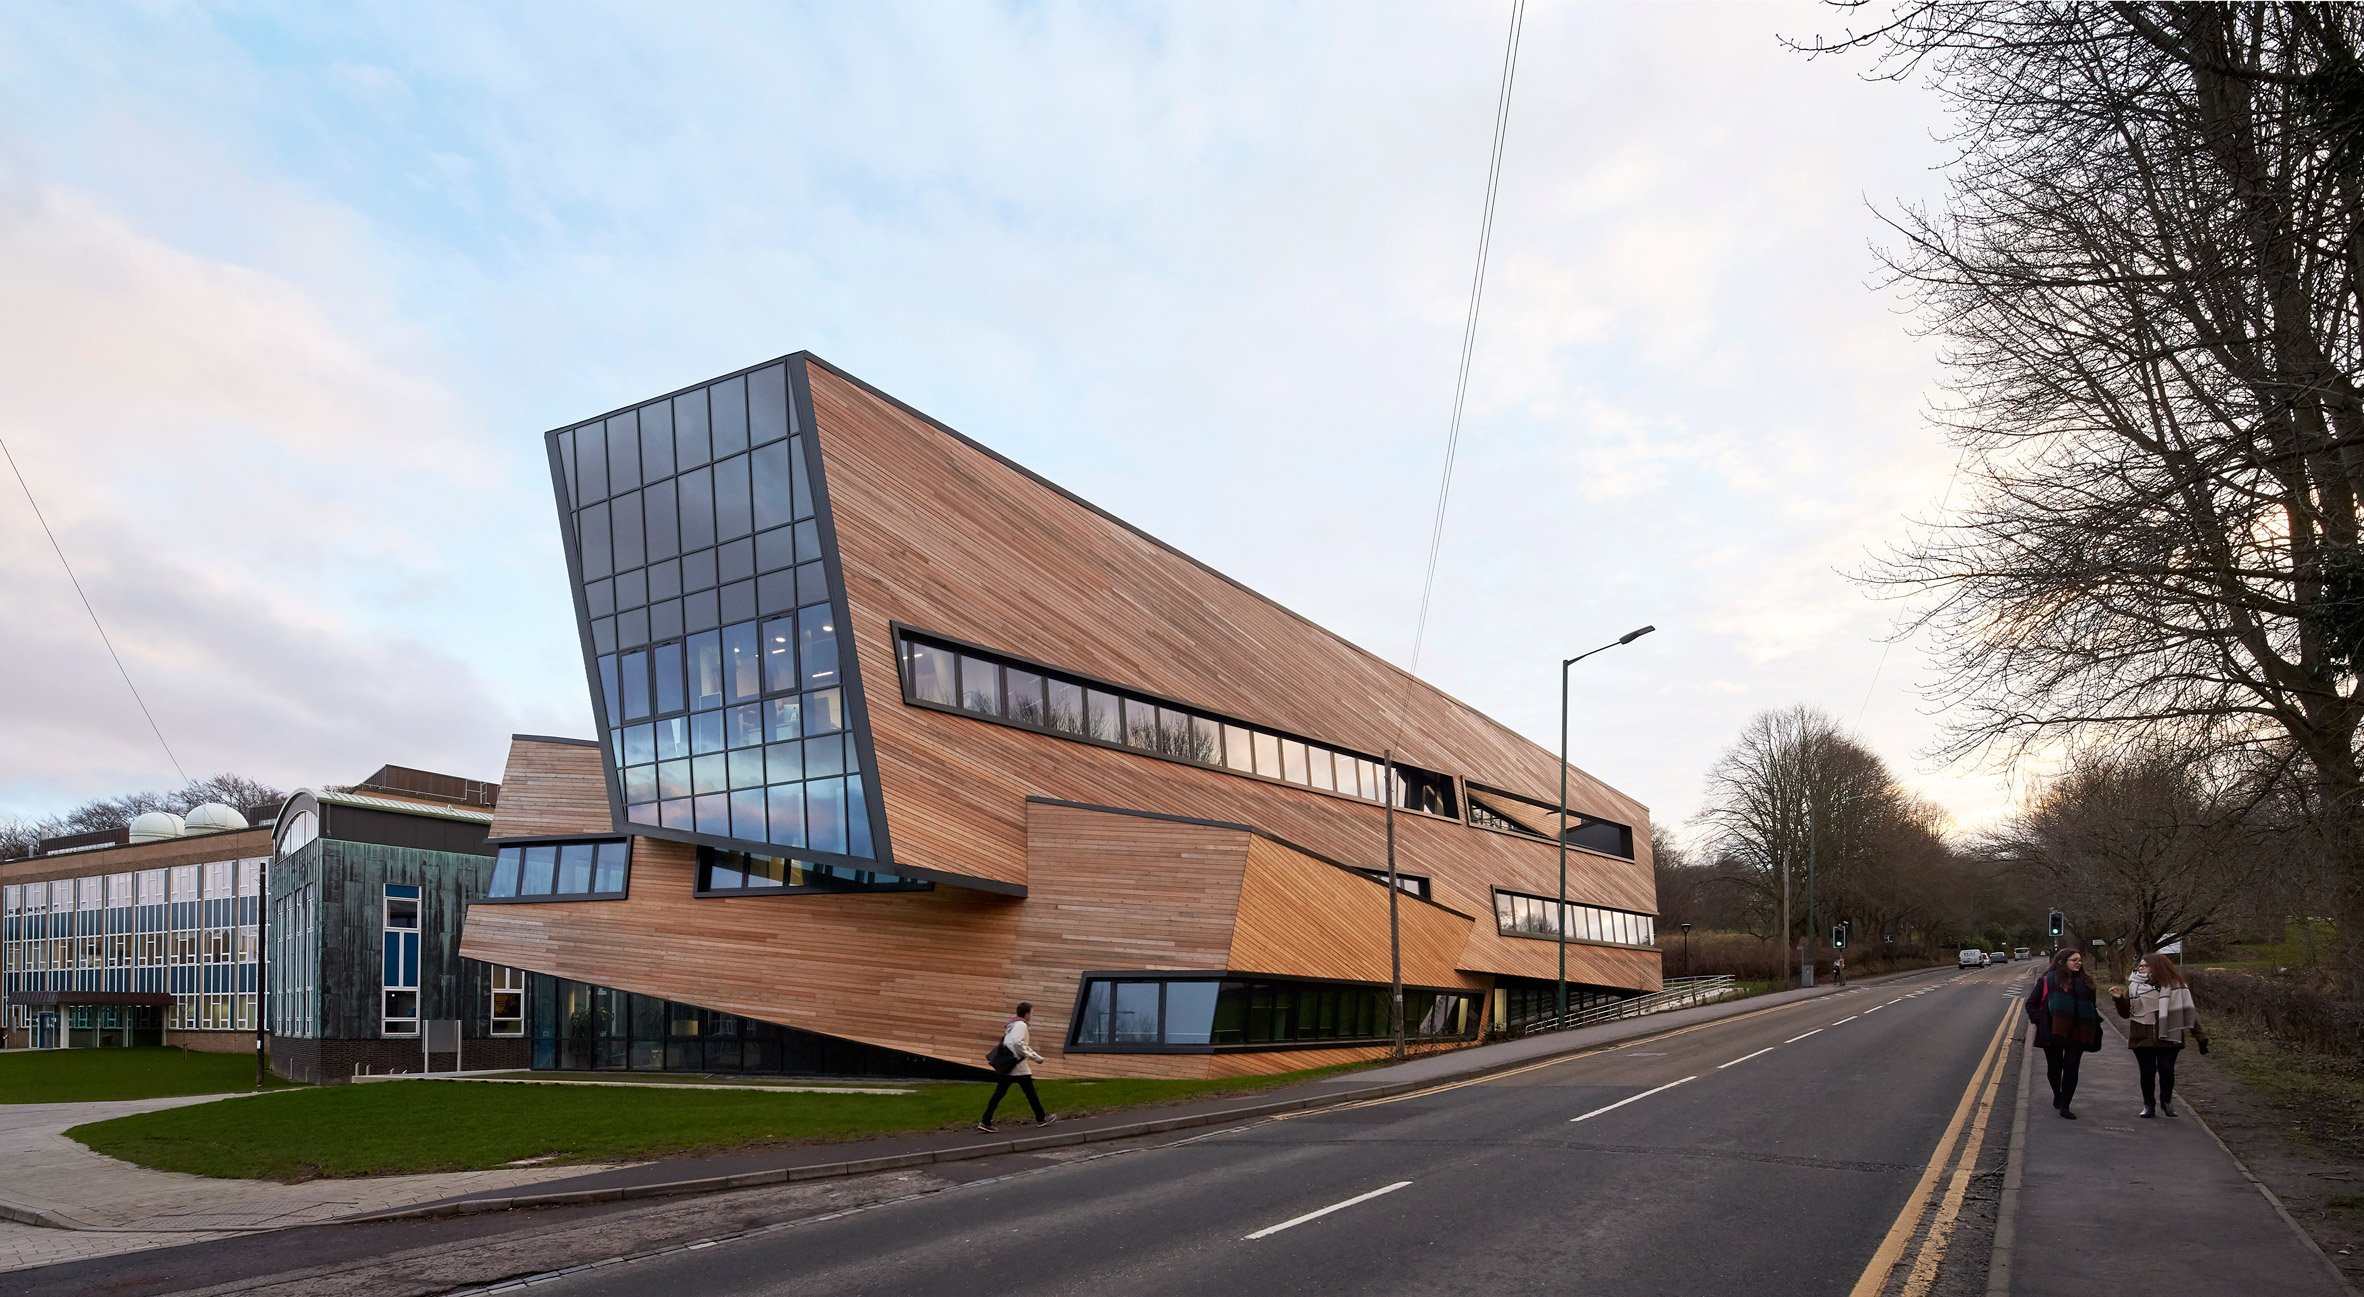 Daniel Libeskind Designs Unique Cosmology Centre for Durham University